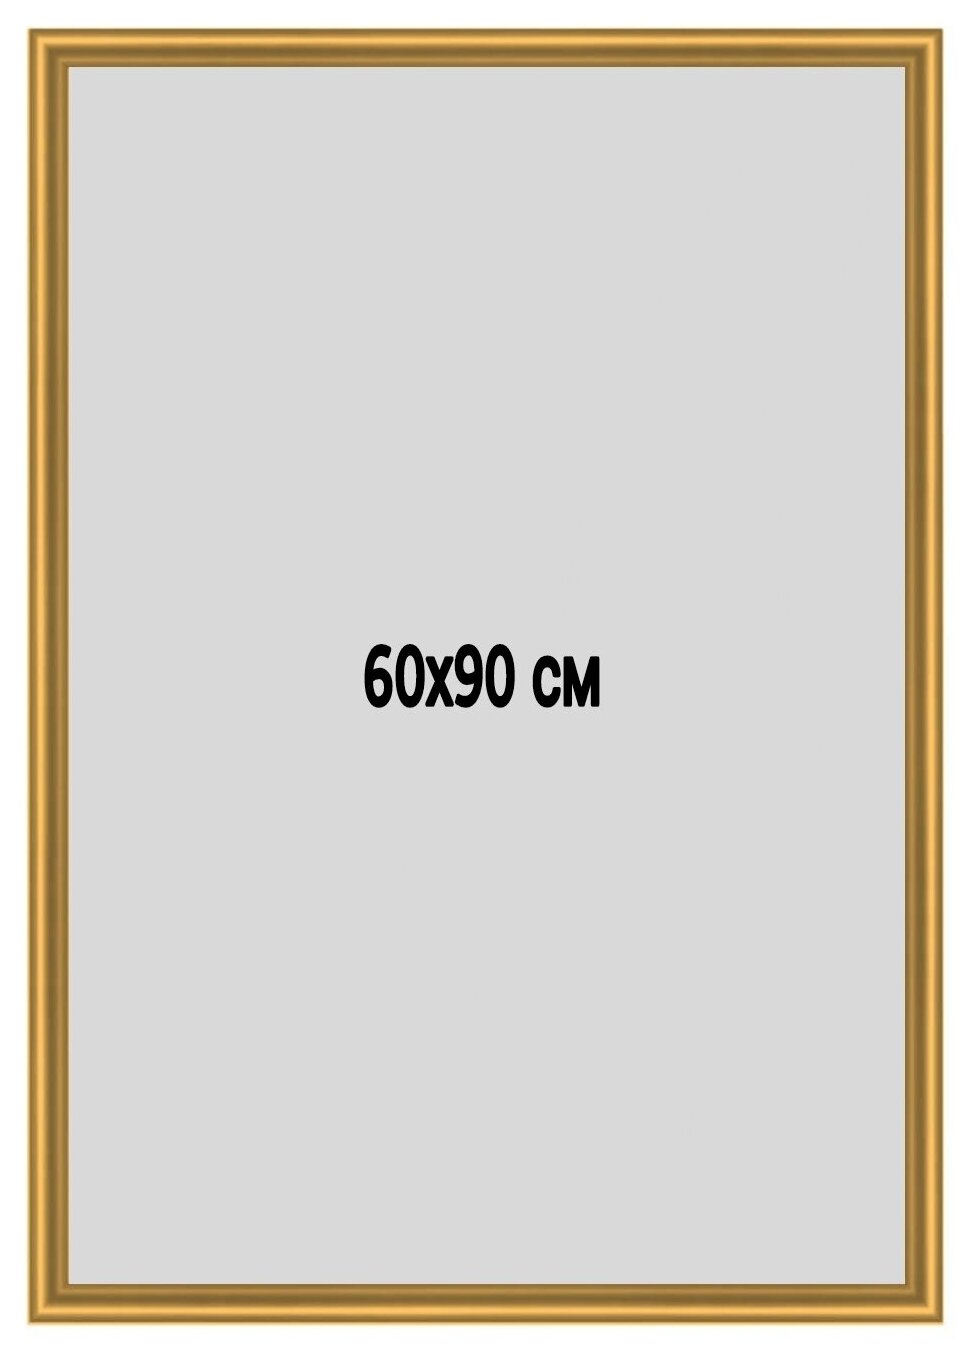 Фоторамка 60х90 см . металлическая (Алюминий) золотая , для постера, фотографии, картины. Рамка для зеркала. Подарок девушке, мужчине.